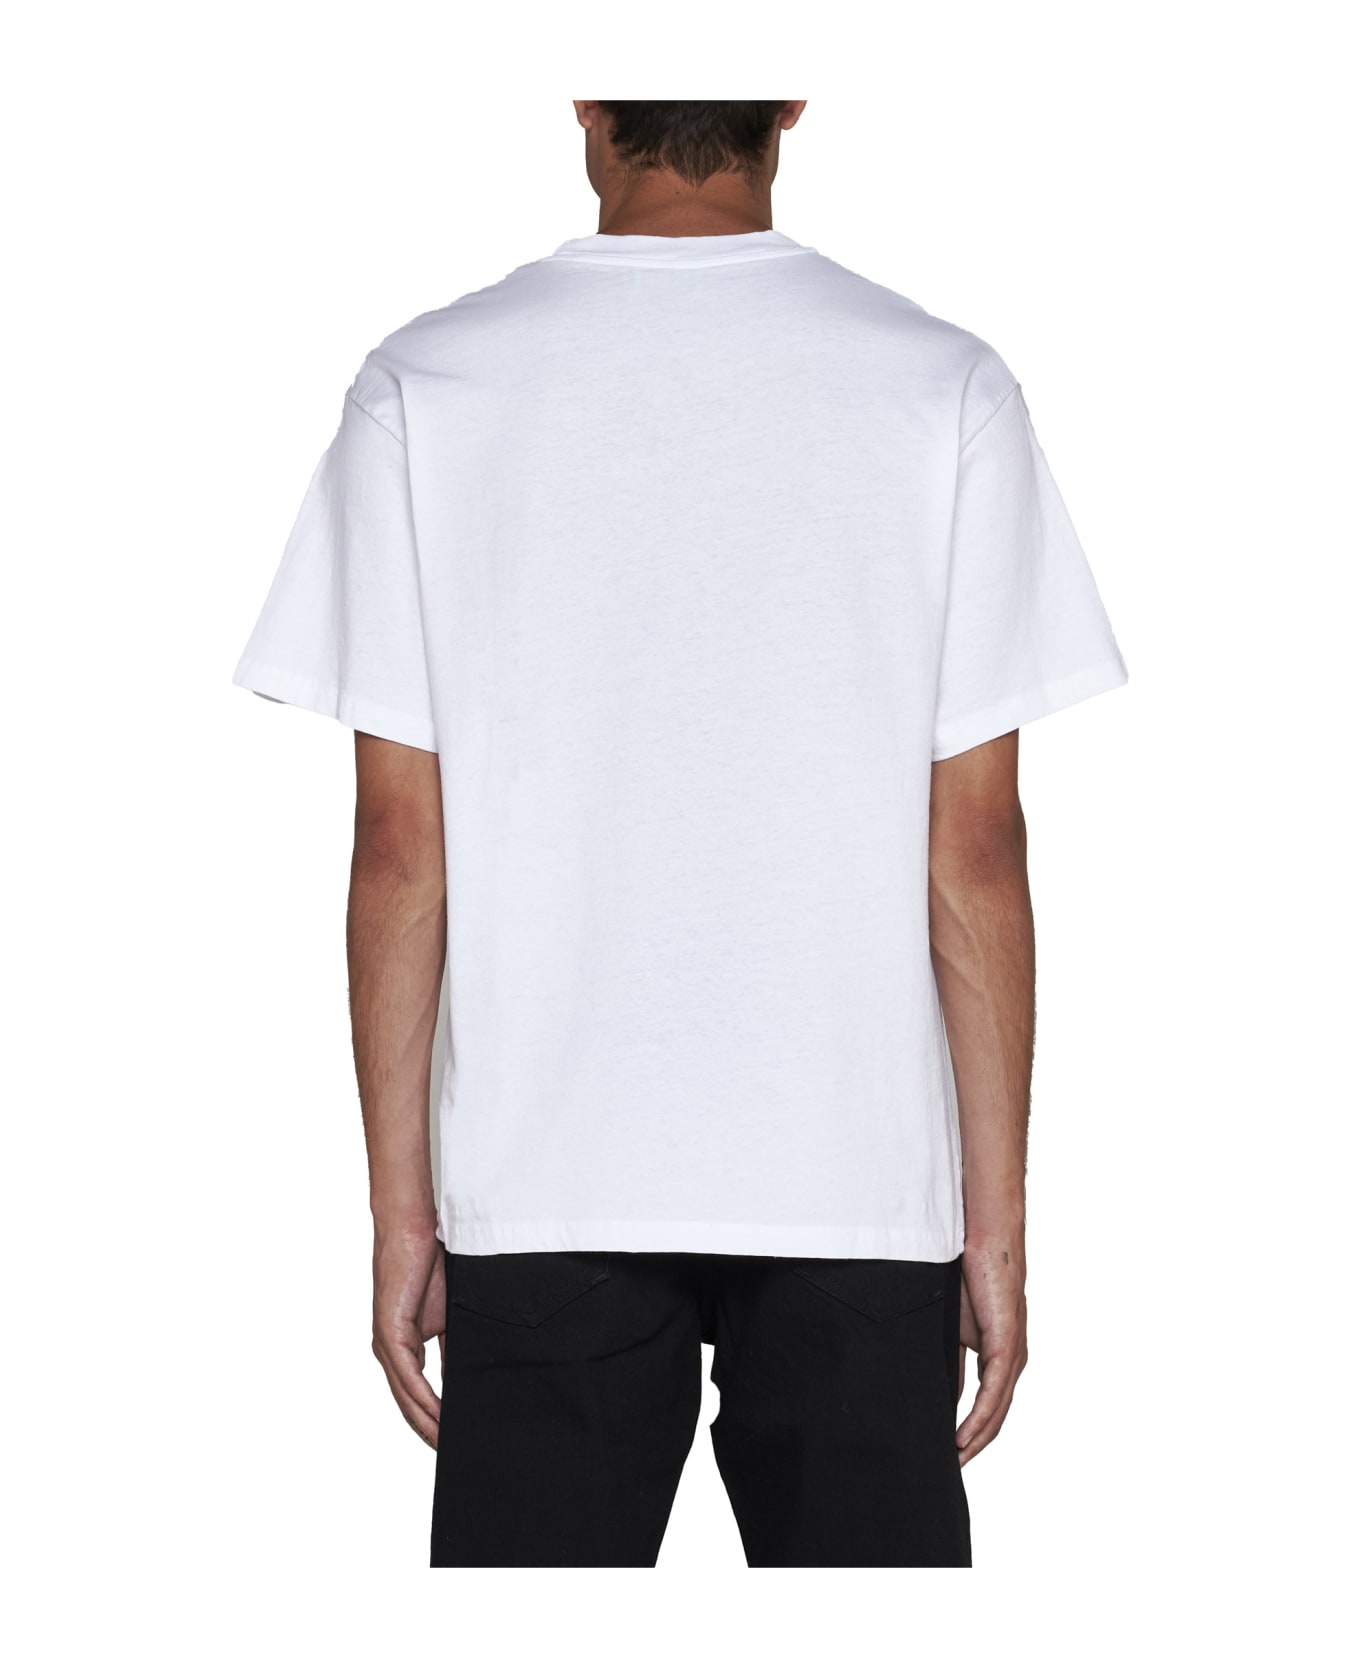 Aries T-Shirt - White